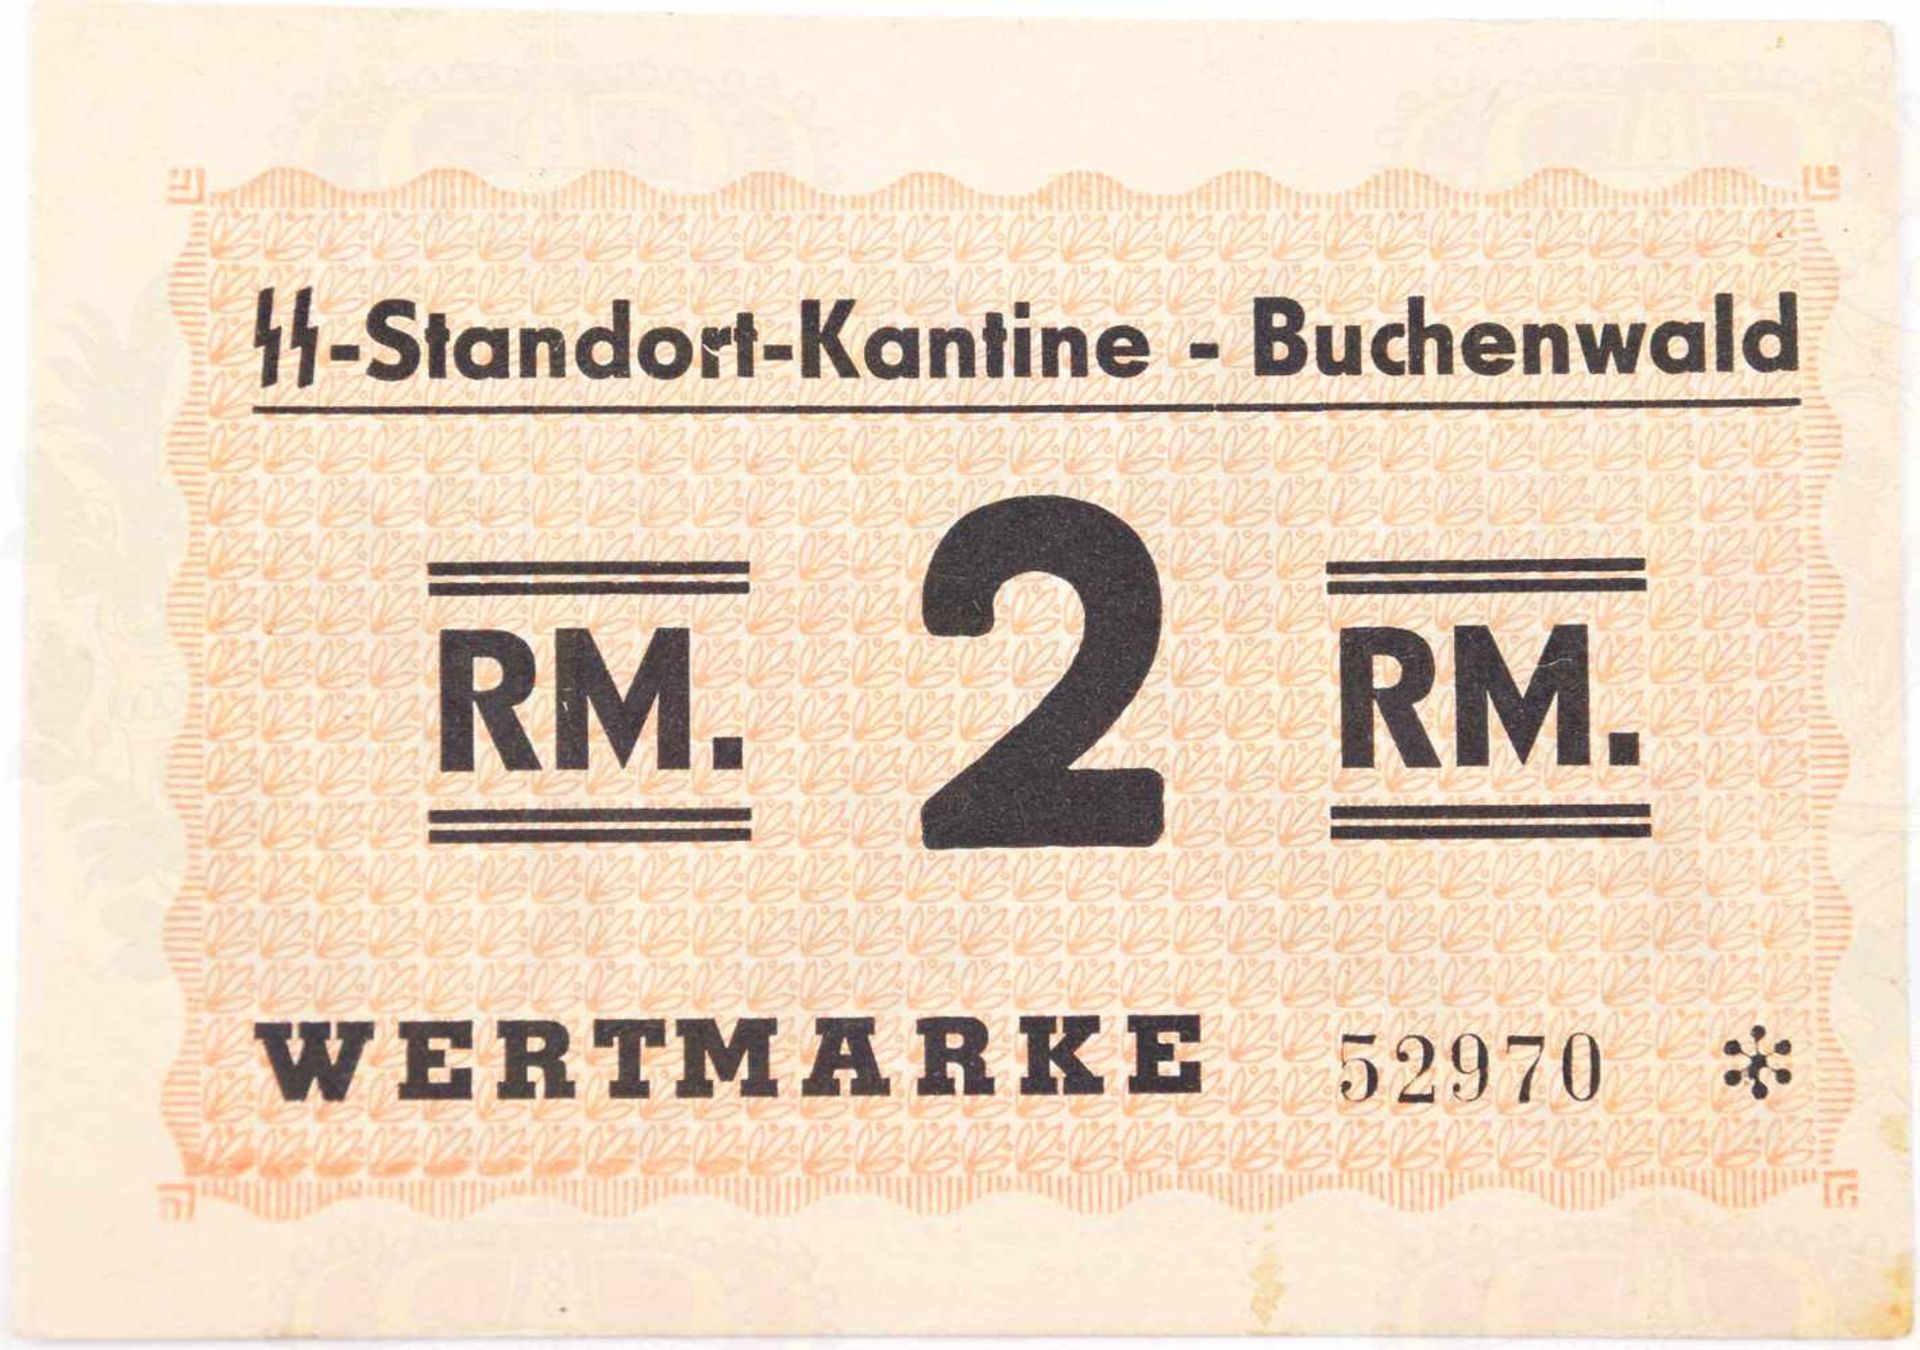 WERTMARKE ÜBER 2 REICHSMARK, SS-Standort-Kantine Buchenwald, schwarz/roter Druck, 10,5x7,5cm